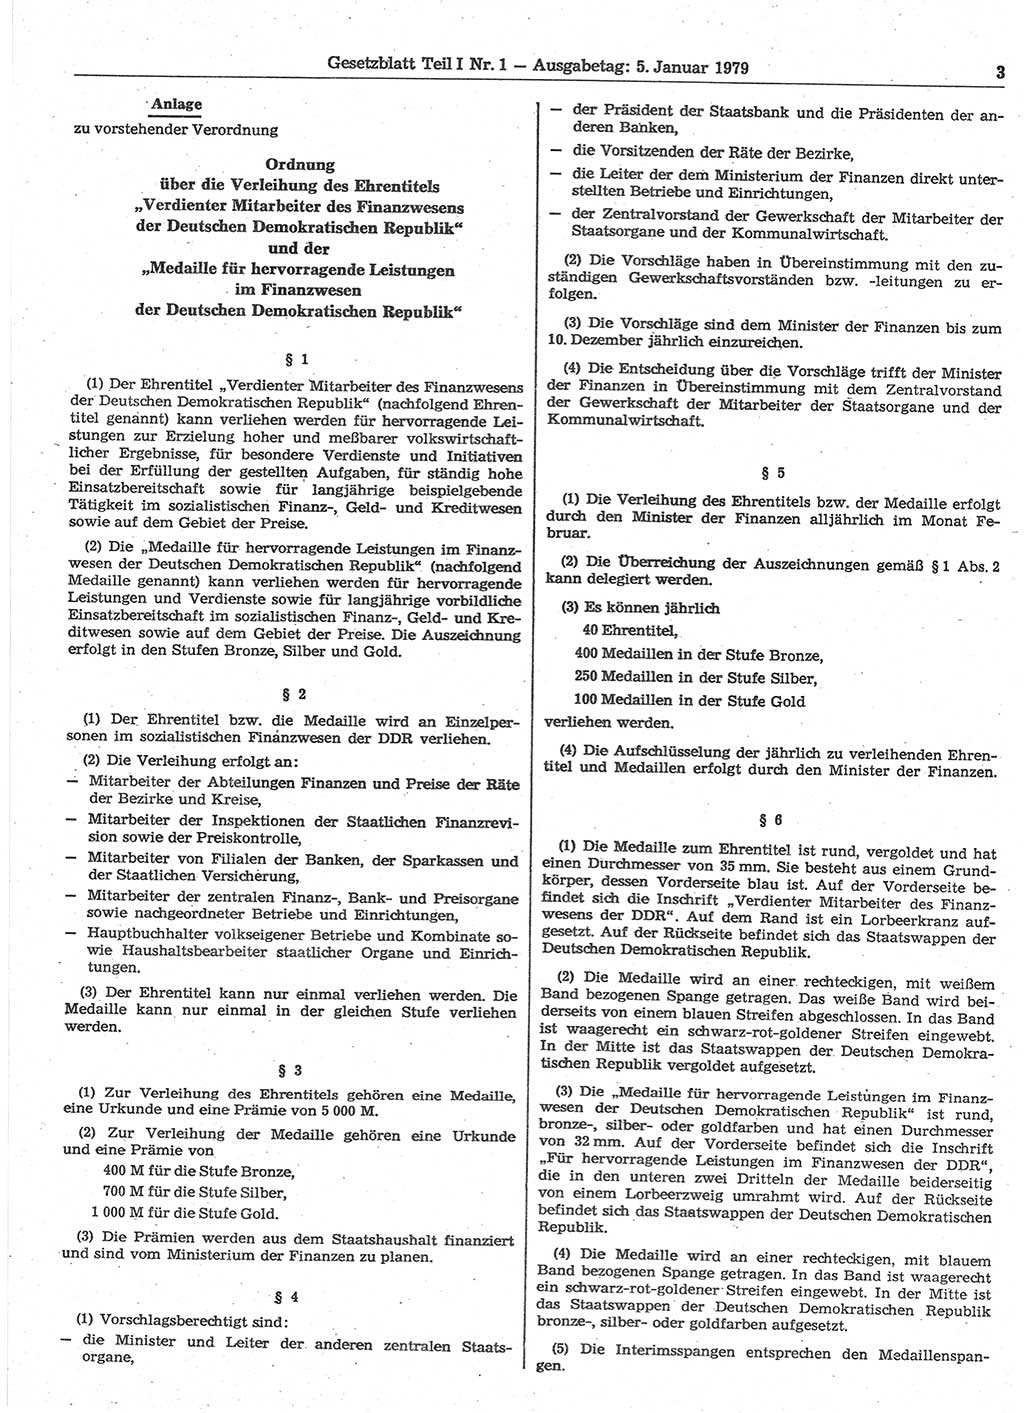 Gesetzblatt (GBl.) der Deutschen Demokratischen Republik (DDR) Teil Ⅰ 1979, Seite 3 (GBl. DDR Ⅰ 1979, S. 3)